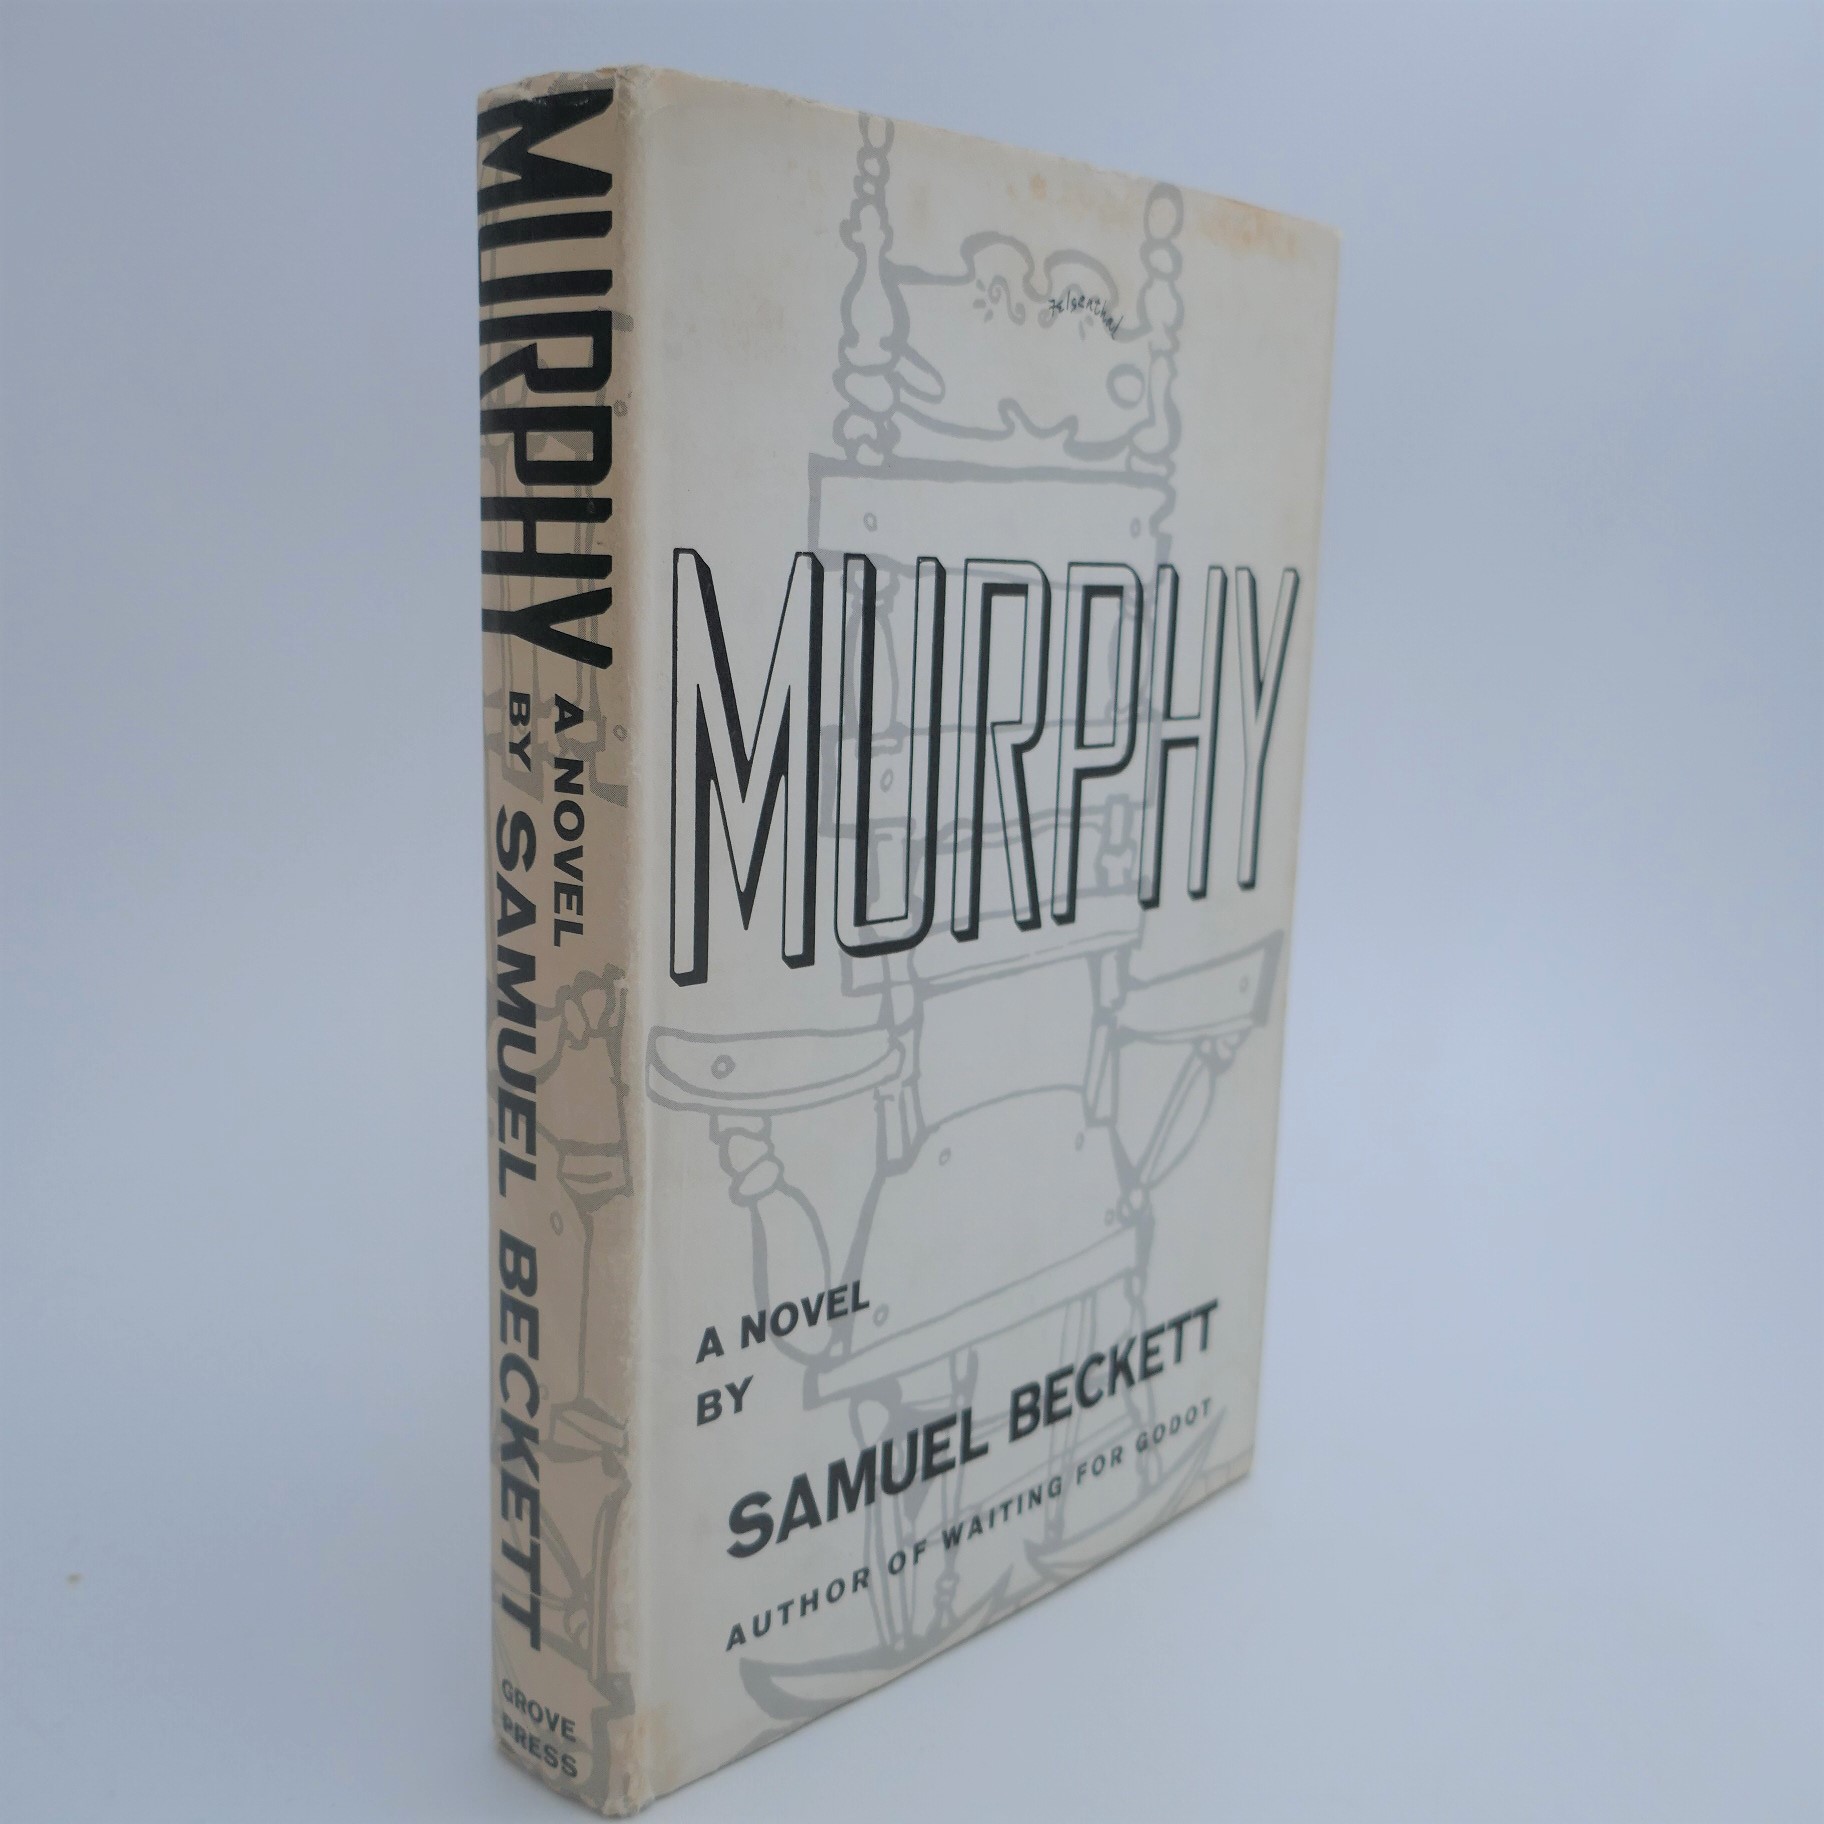 Murphy. First US Edition (1957) by Samuel Beckett